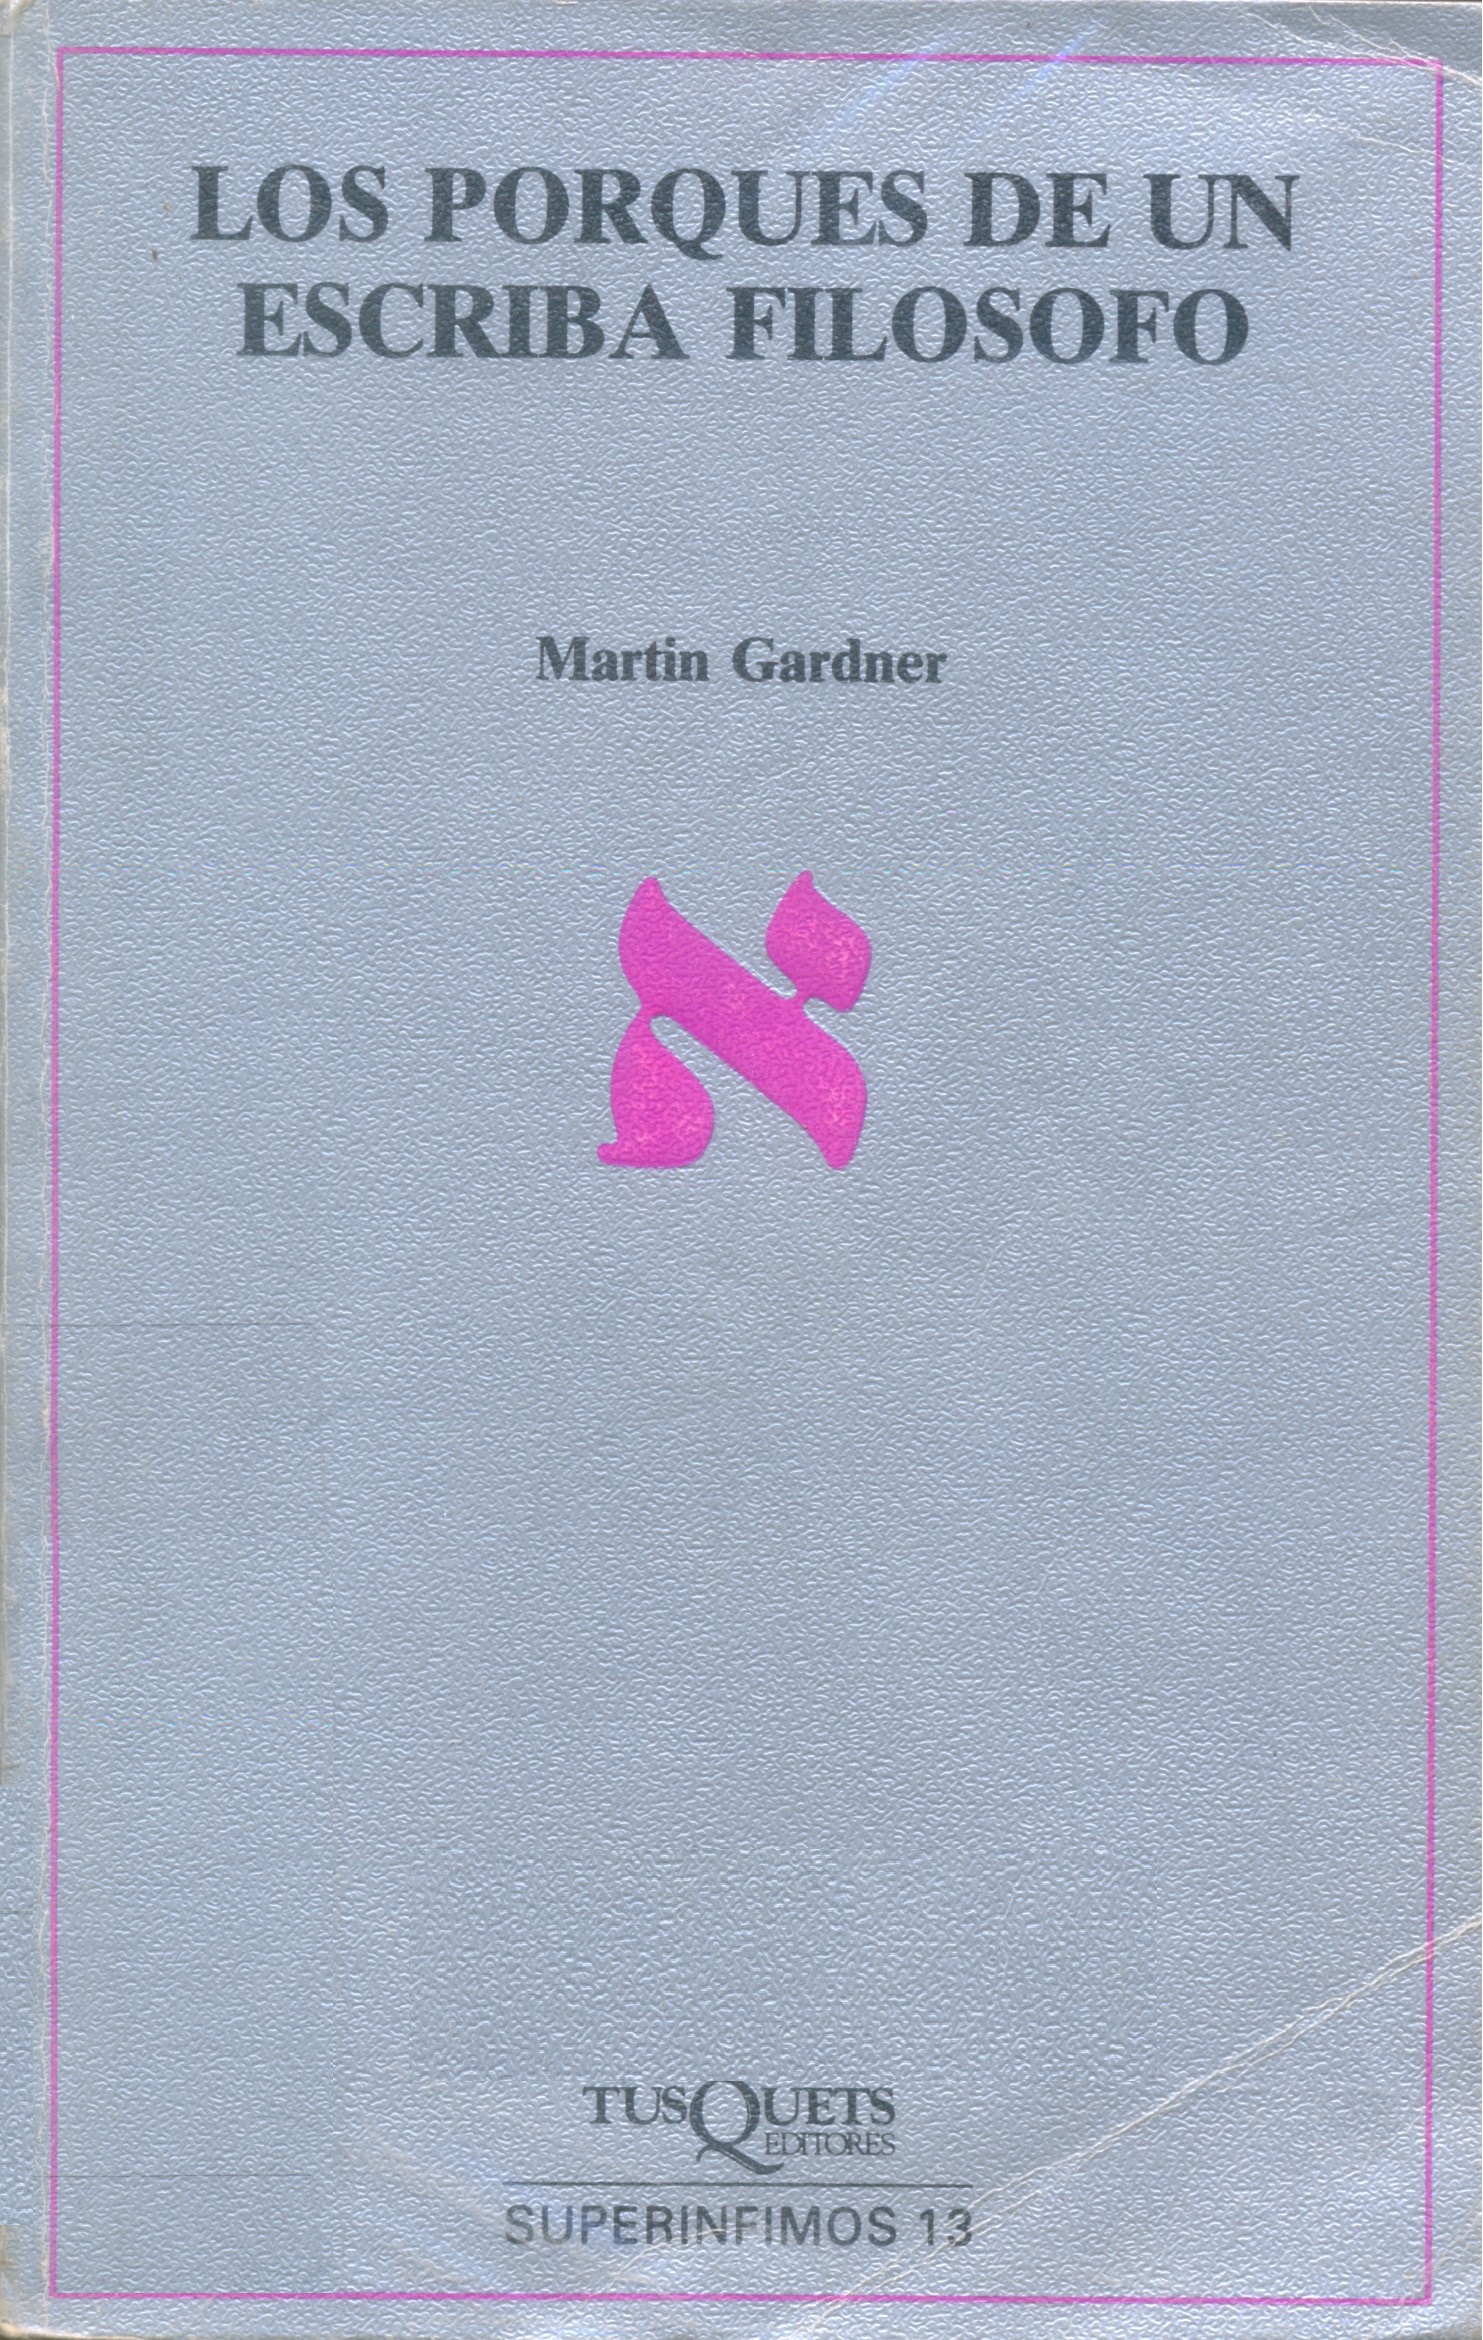 Los Porqués de un escriba filósofo / Martin Gardner